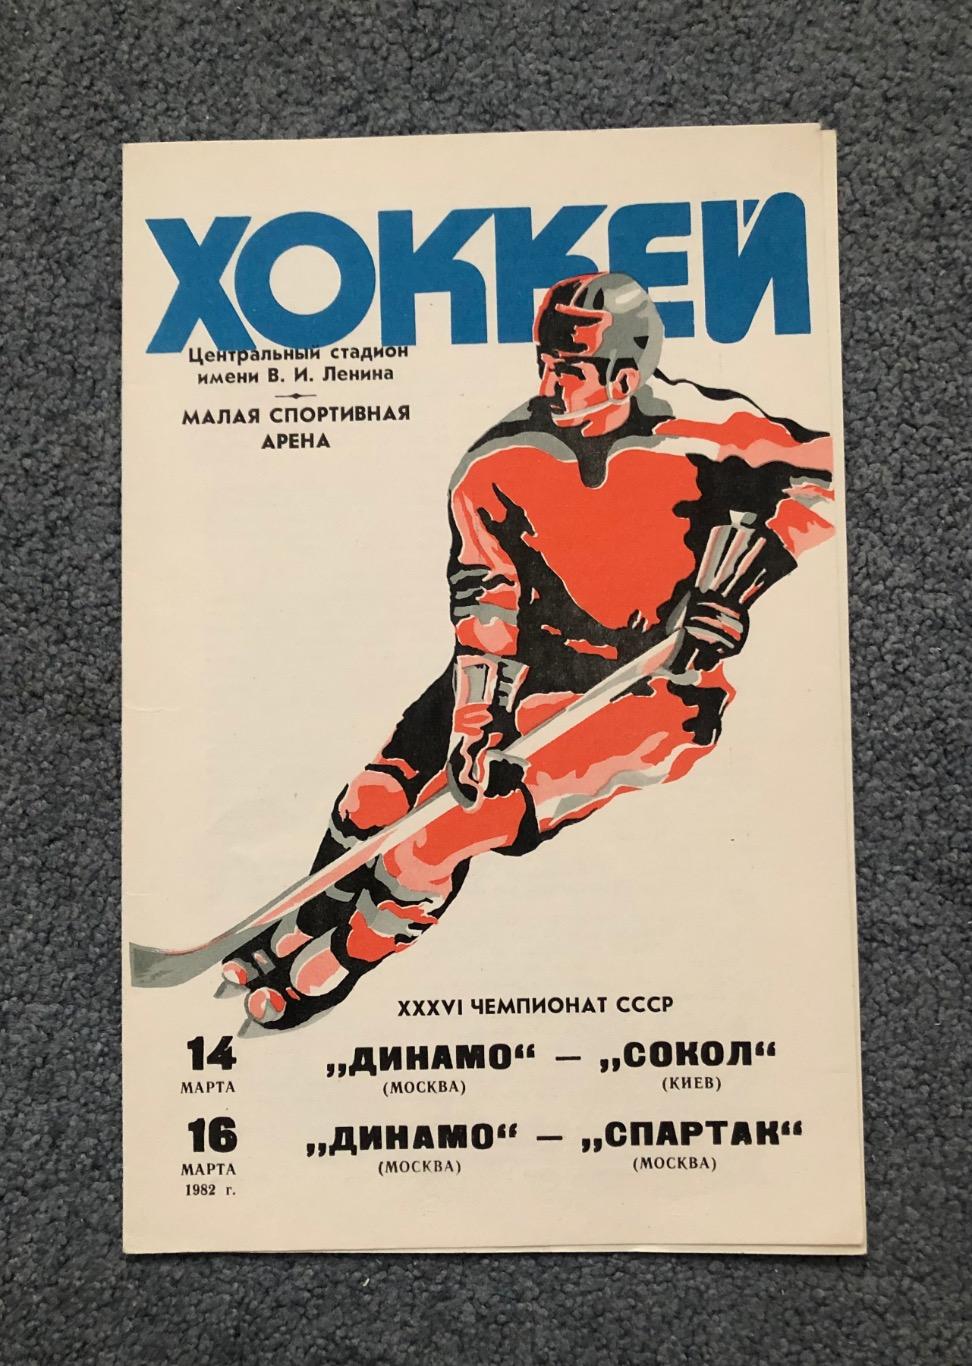 Динамо Москва - Сокол Киев, Динамо Москва - Спартак Москва, 14 и 16.03.1982